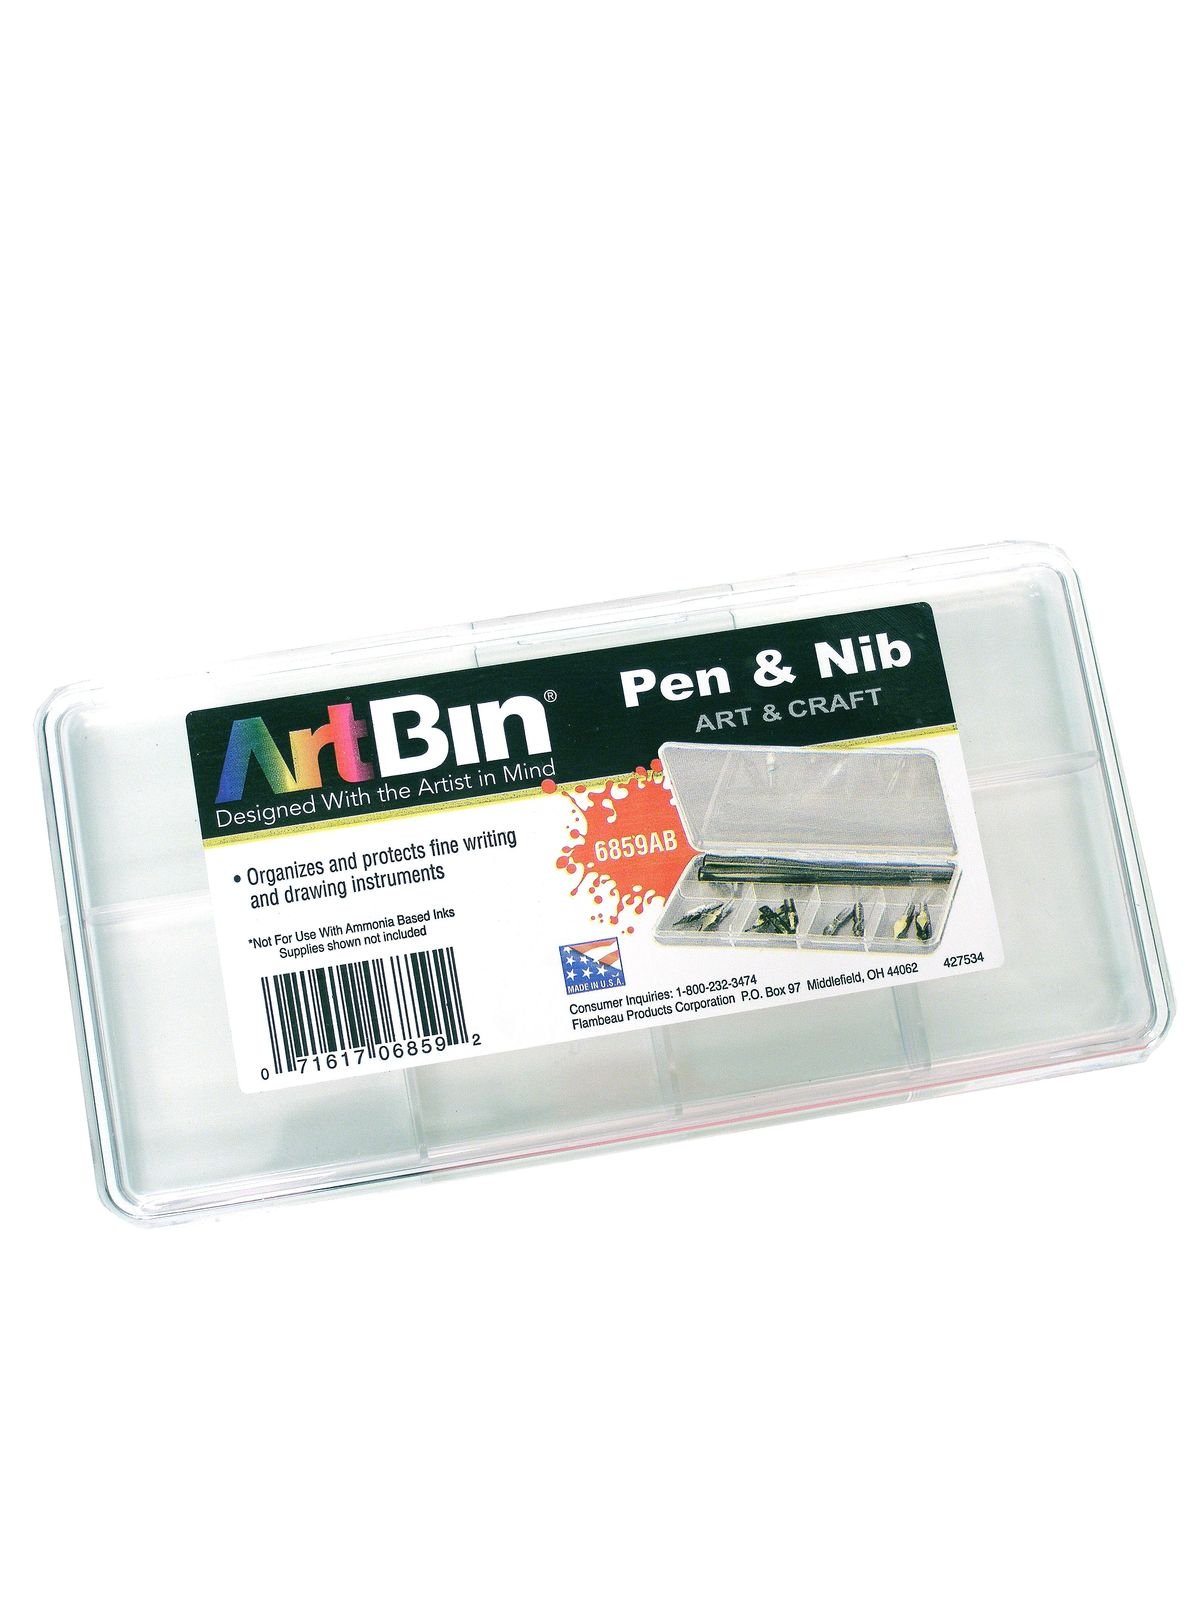 ArtBin - Pen & Nib Box